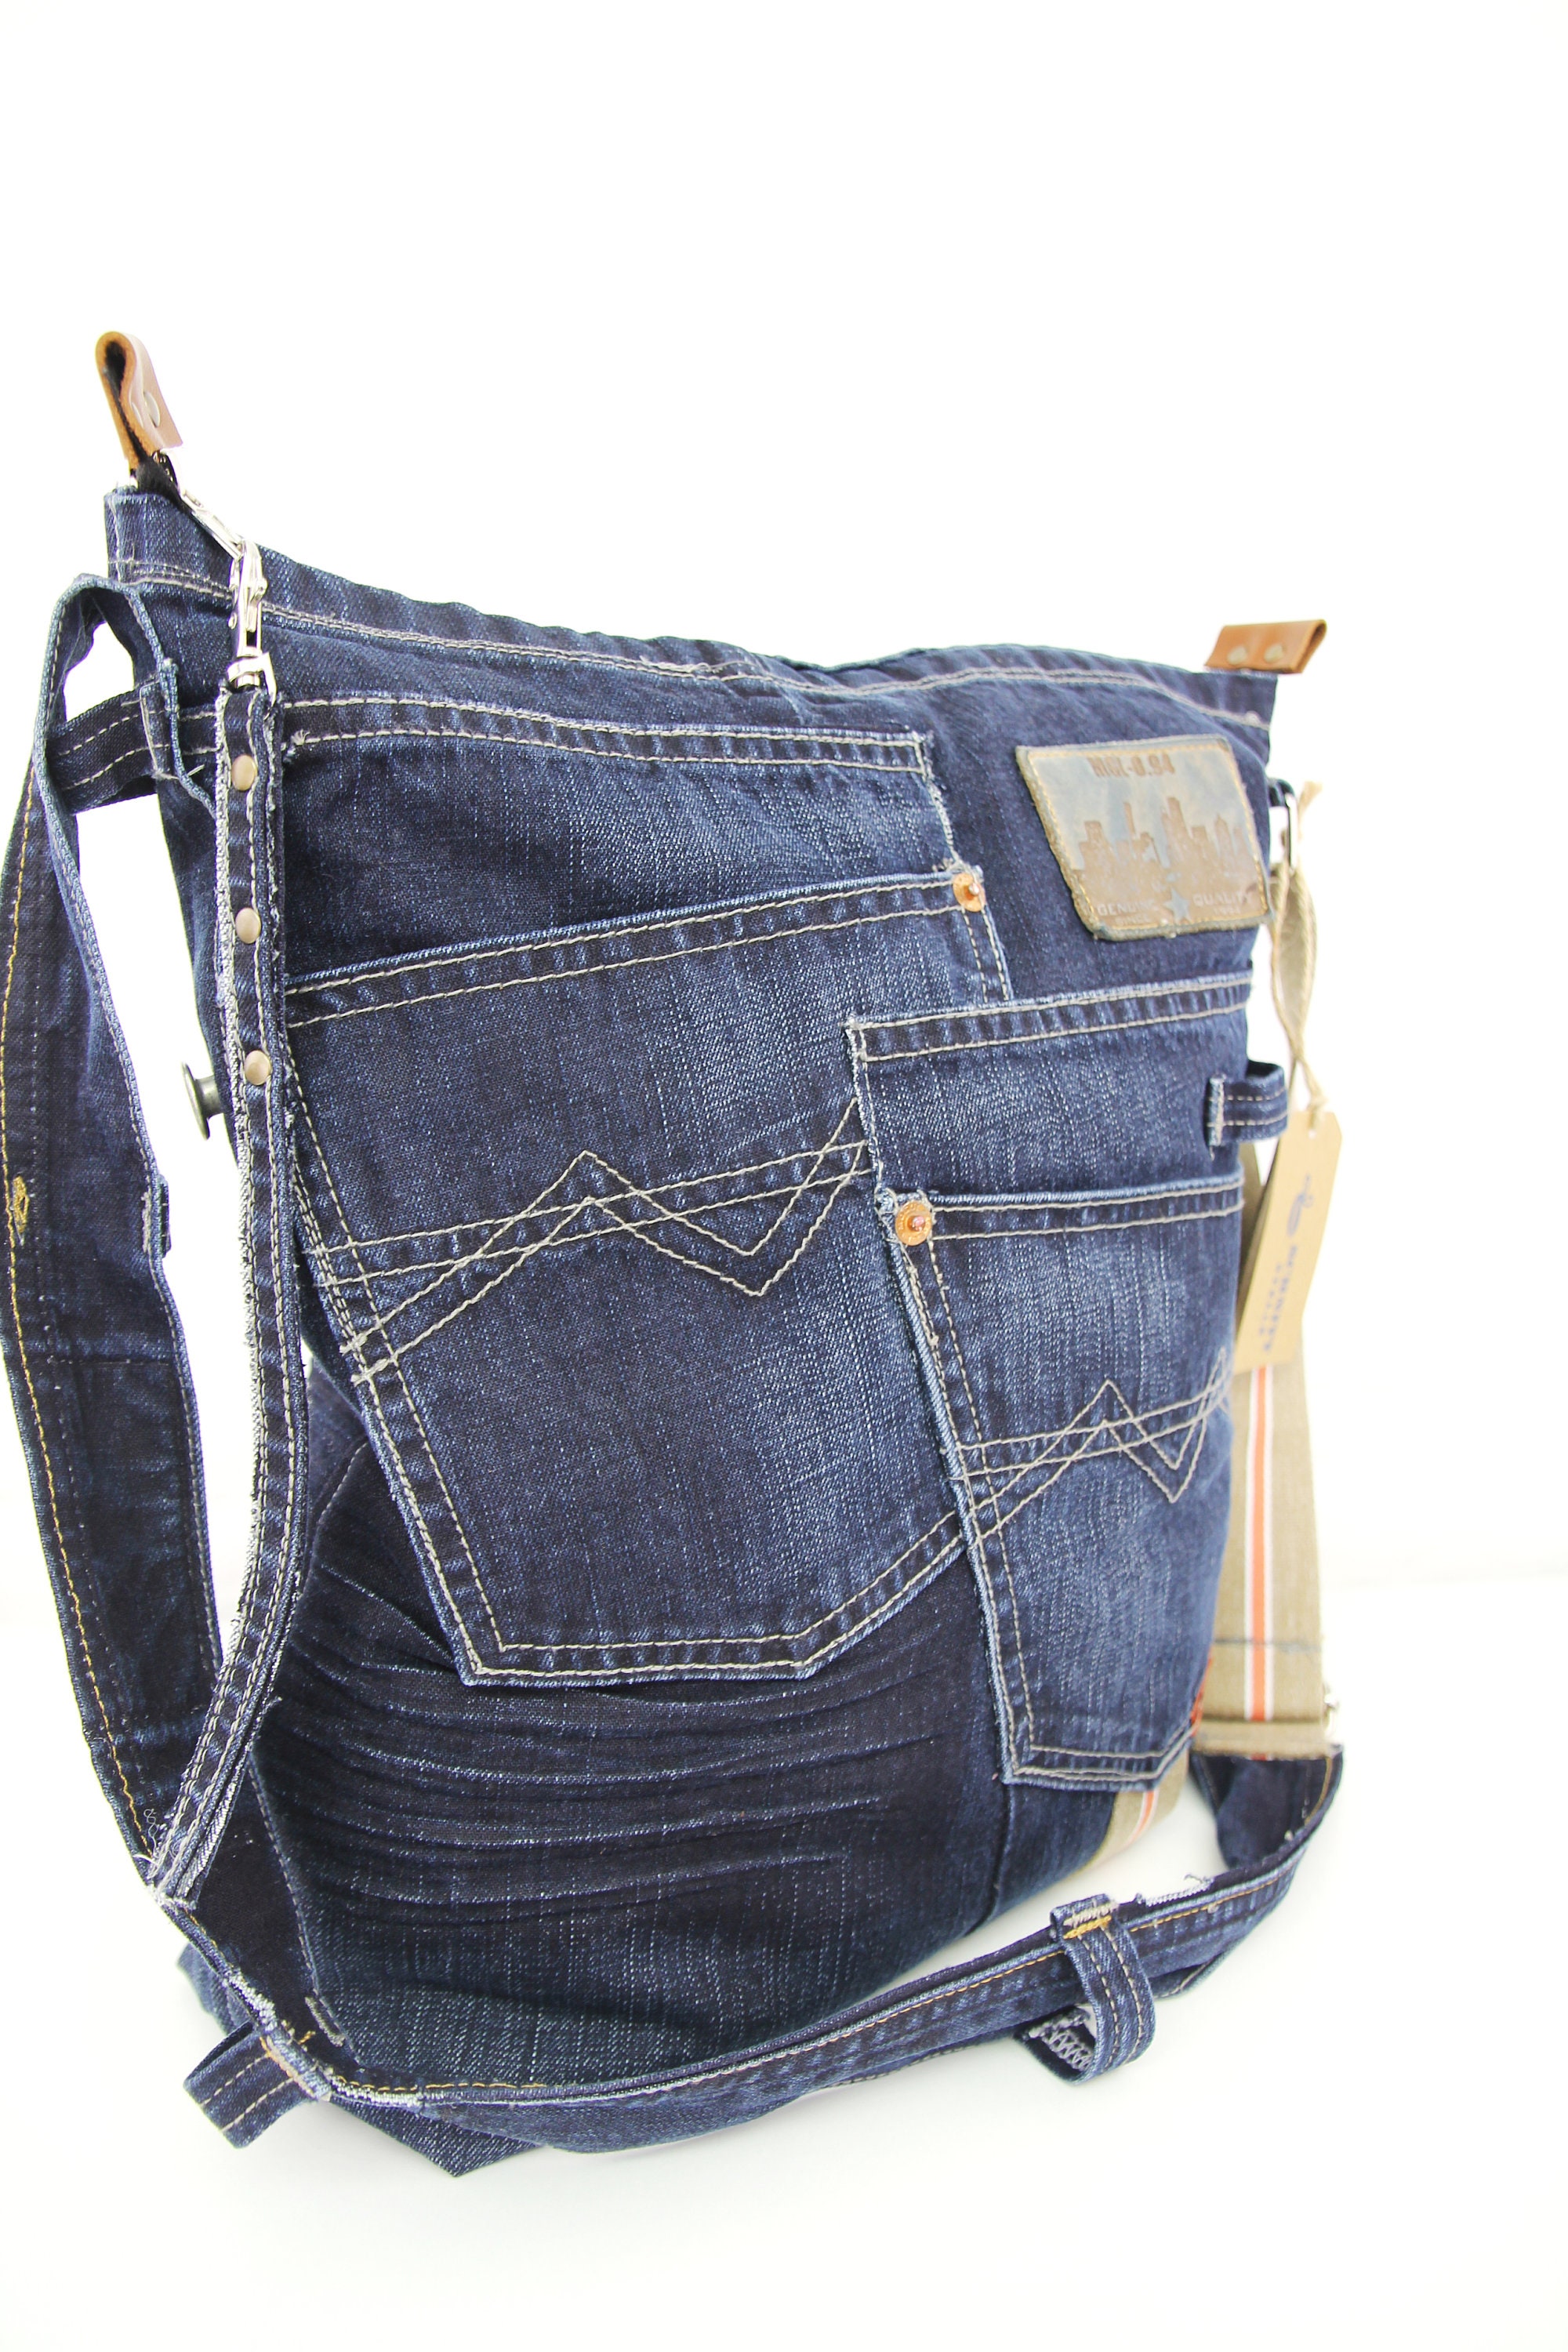 Jean Bag / Women's Bag / Upcycled Bag / Denim Bag - Etsy